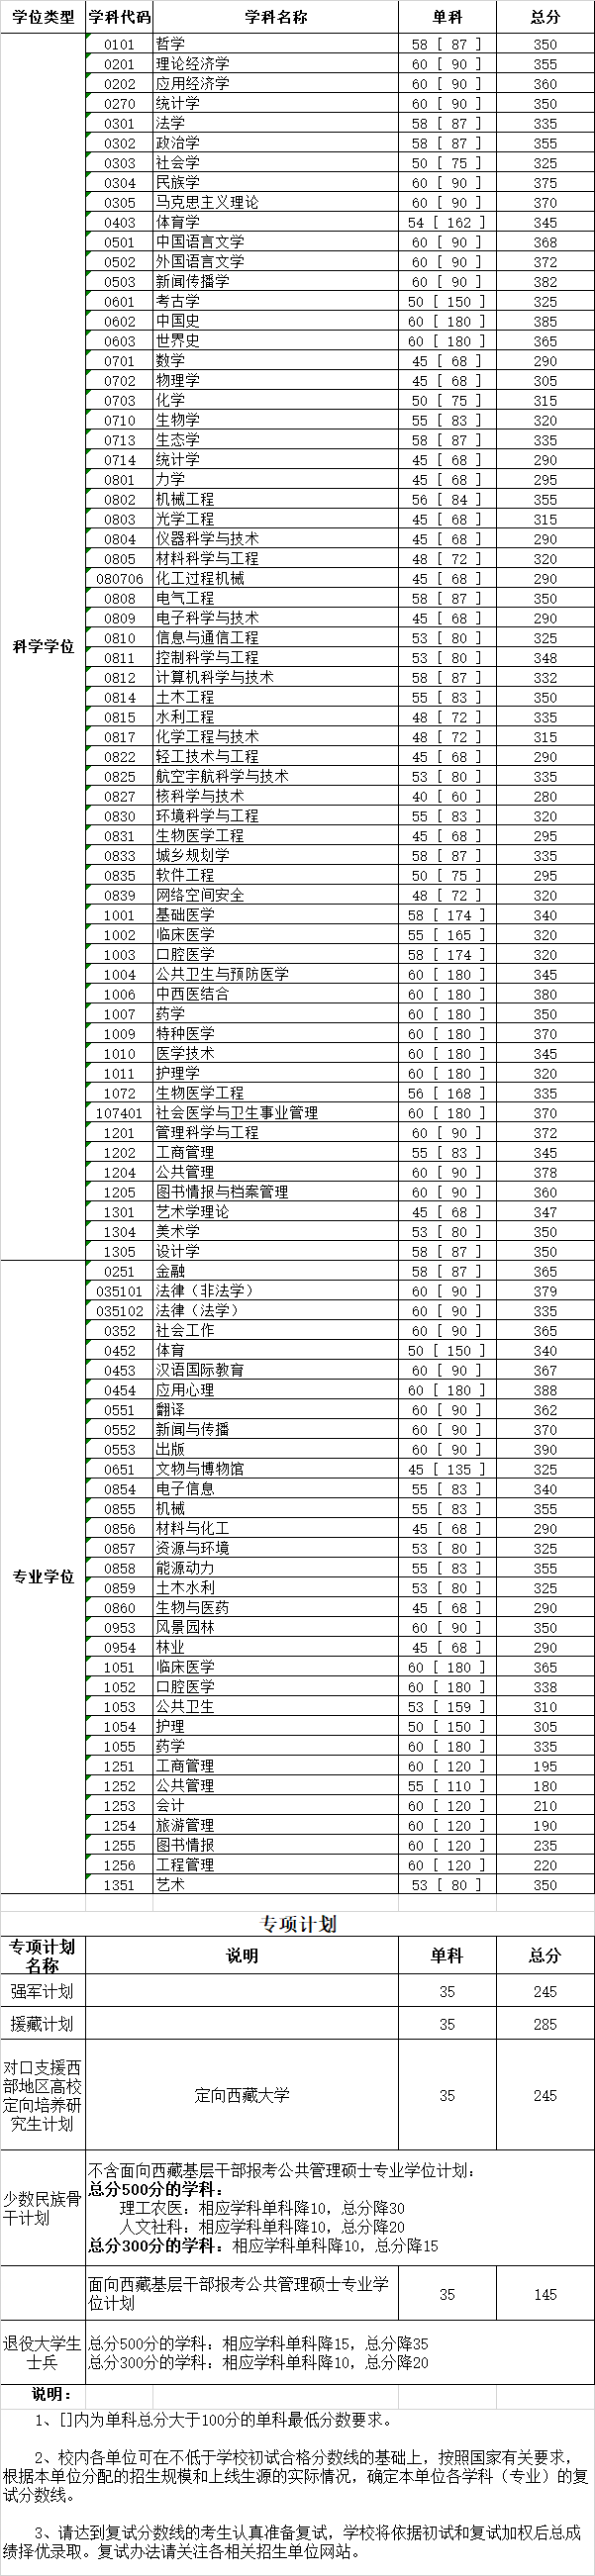 四川大学2020年研究生复试分数线